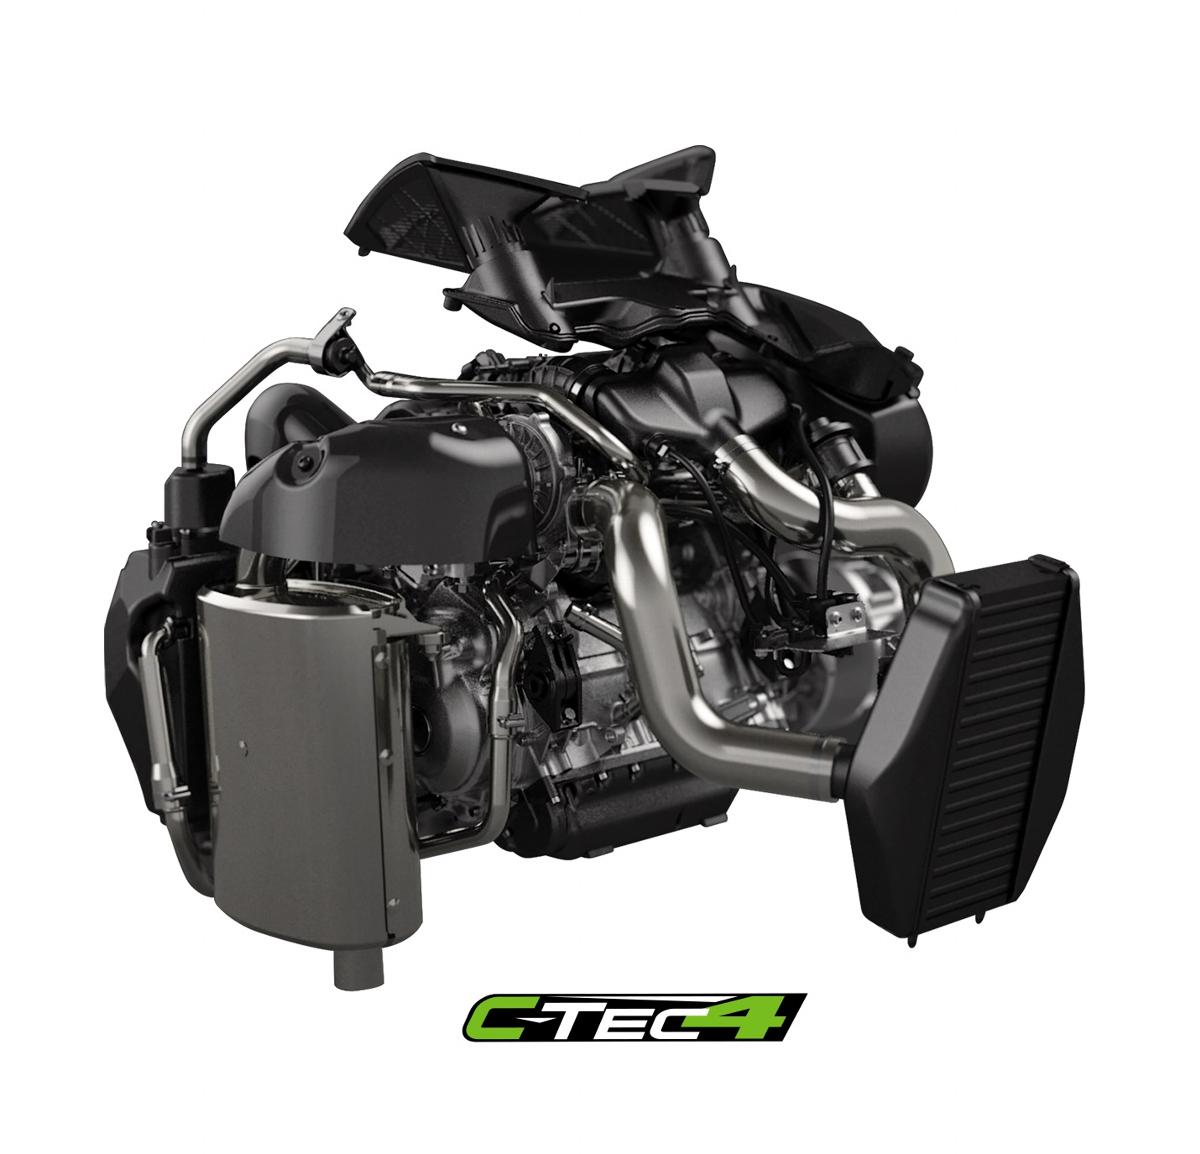 Essai de la motoneige ZR 9000 Limited (137) iACT 2019 - motoneiges - motoneigistes